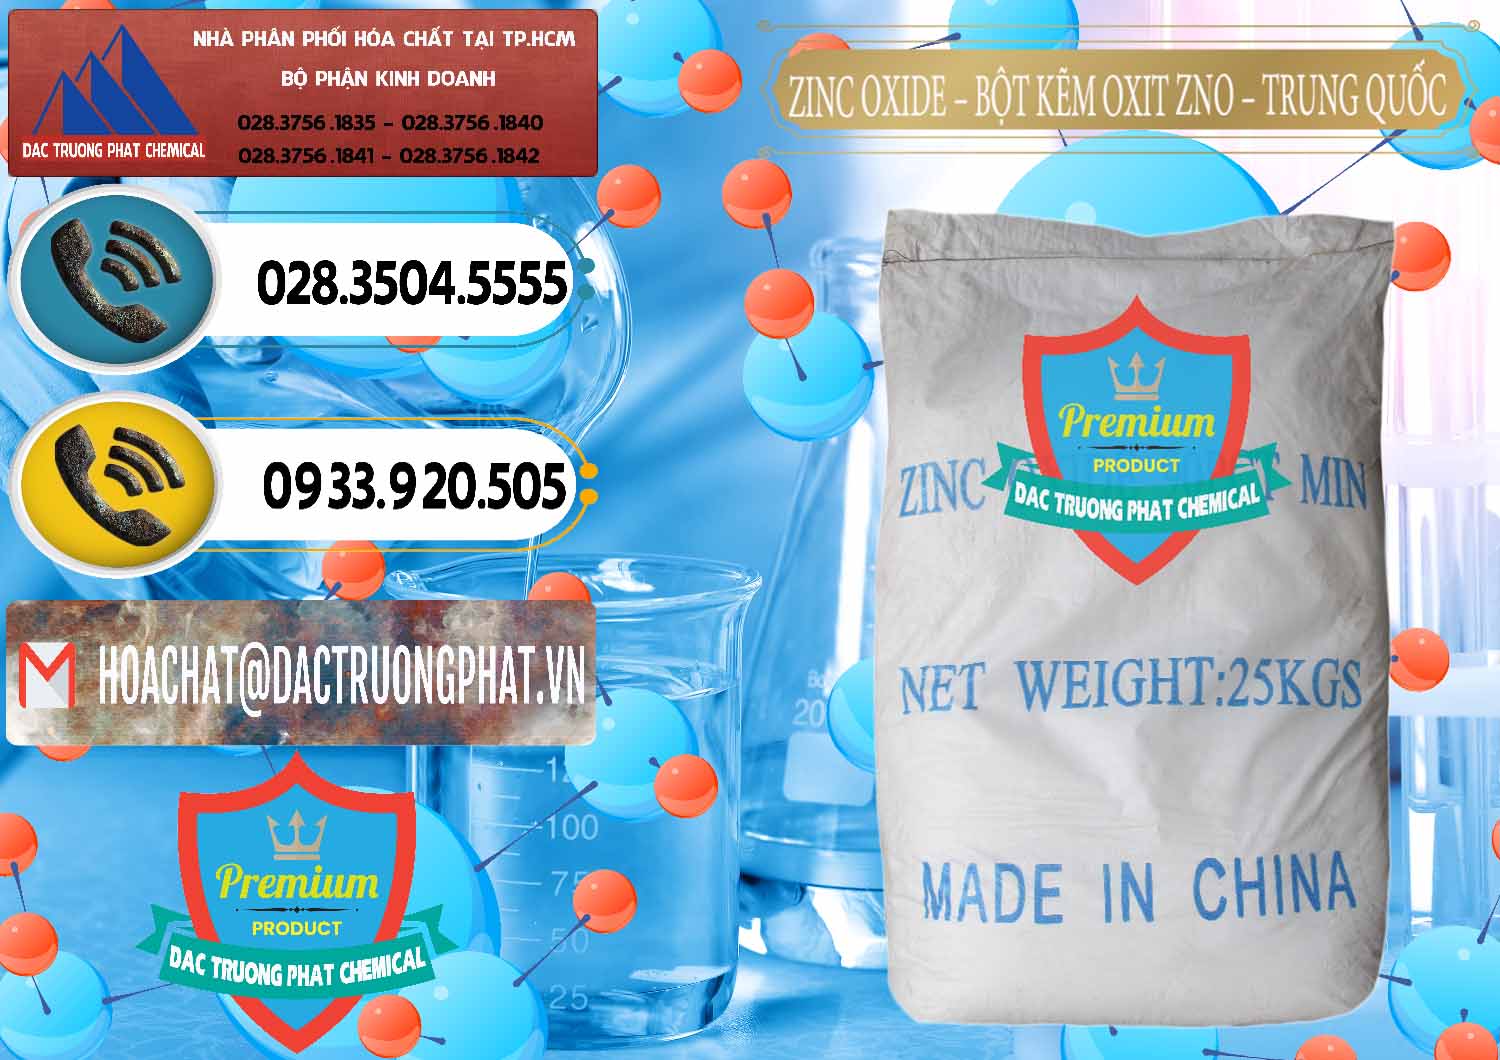 Chuyên bán _ cung cấp Zinc Oxide - Bột Kẽm Oxit ZNO Trung Quốc China - 0182 - Đơn vị chuyên cung cấp ( bán ) hóa chất tại TP.HCM - hoachatdetnhuom.vn